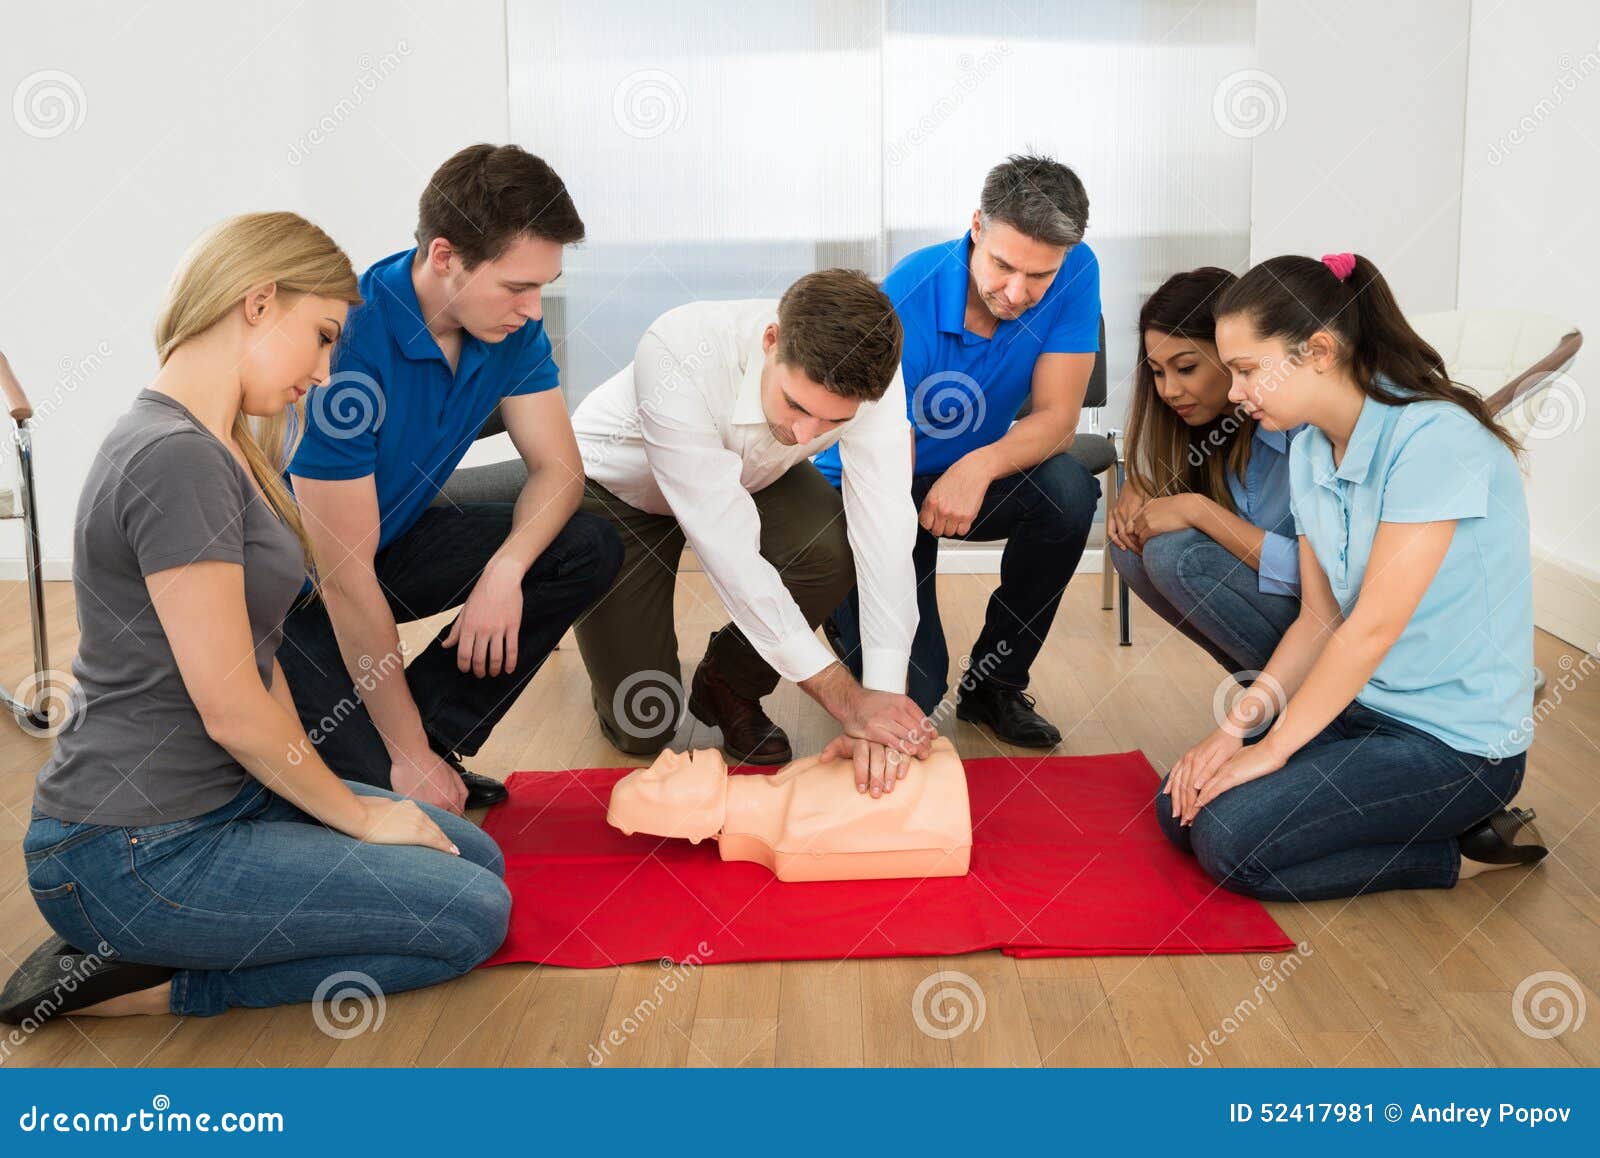 resuscitation training